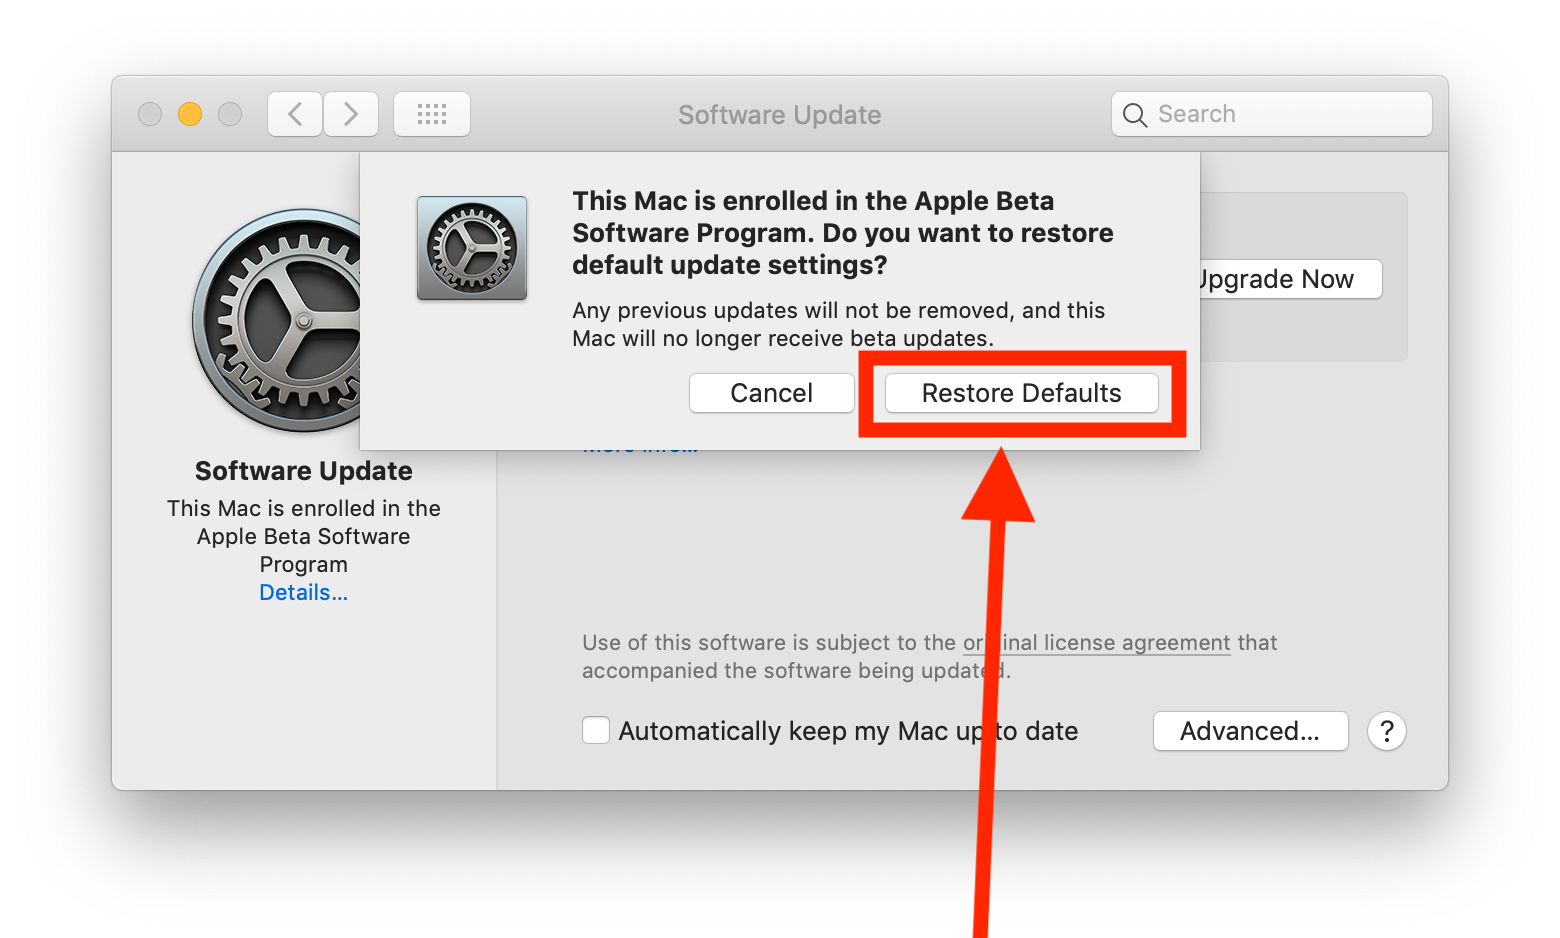 Leave beta program apple macbook ipad 4 retina display review cnet